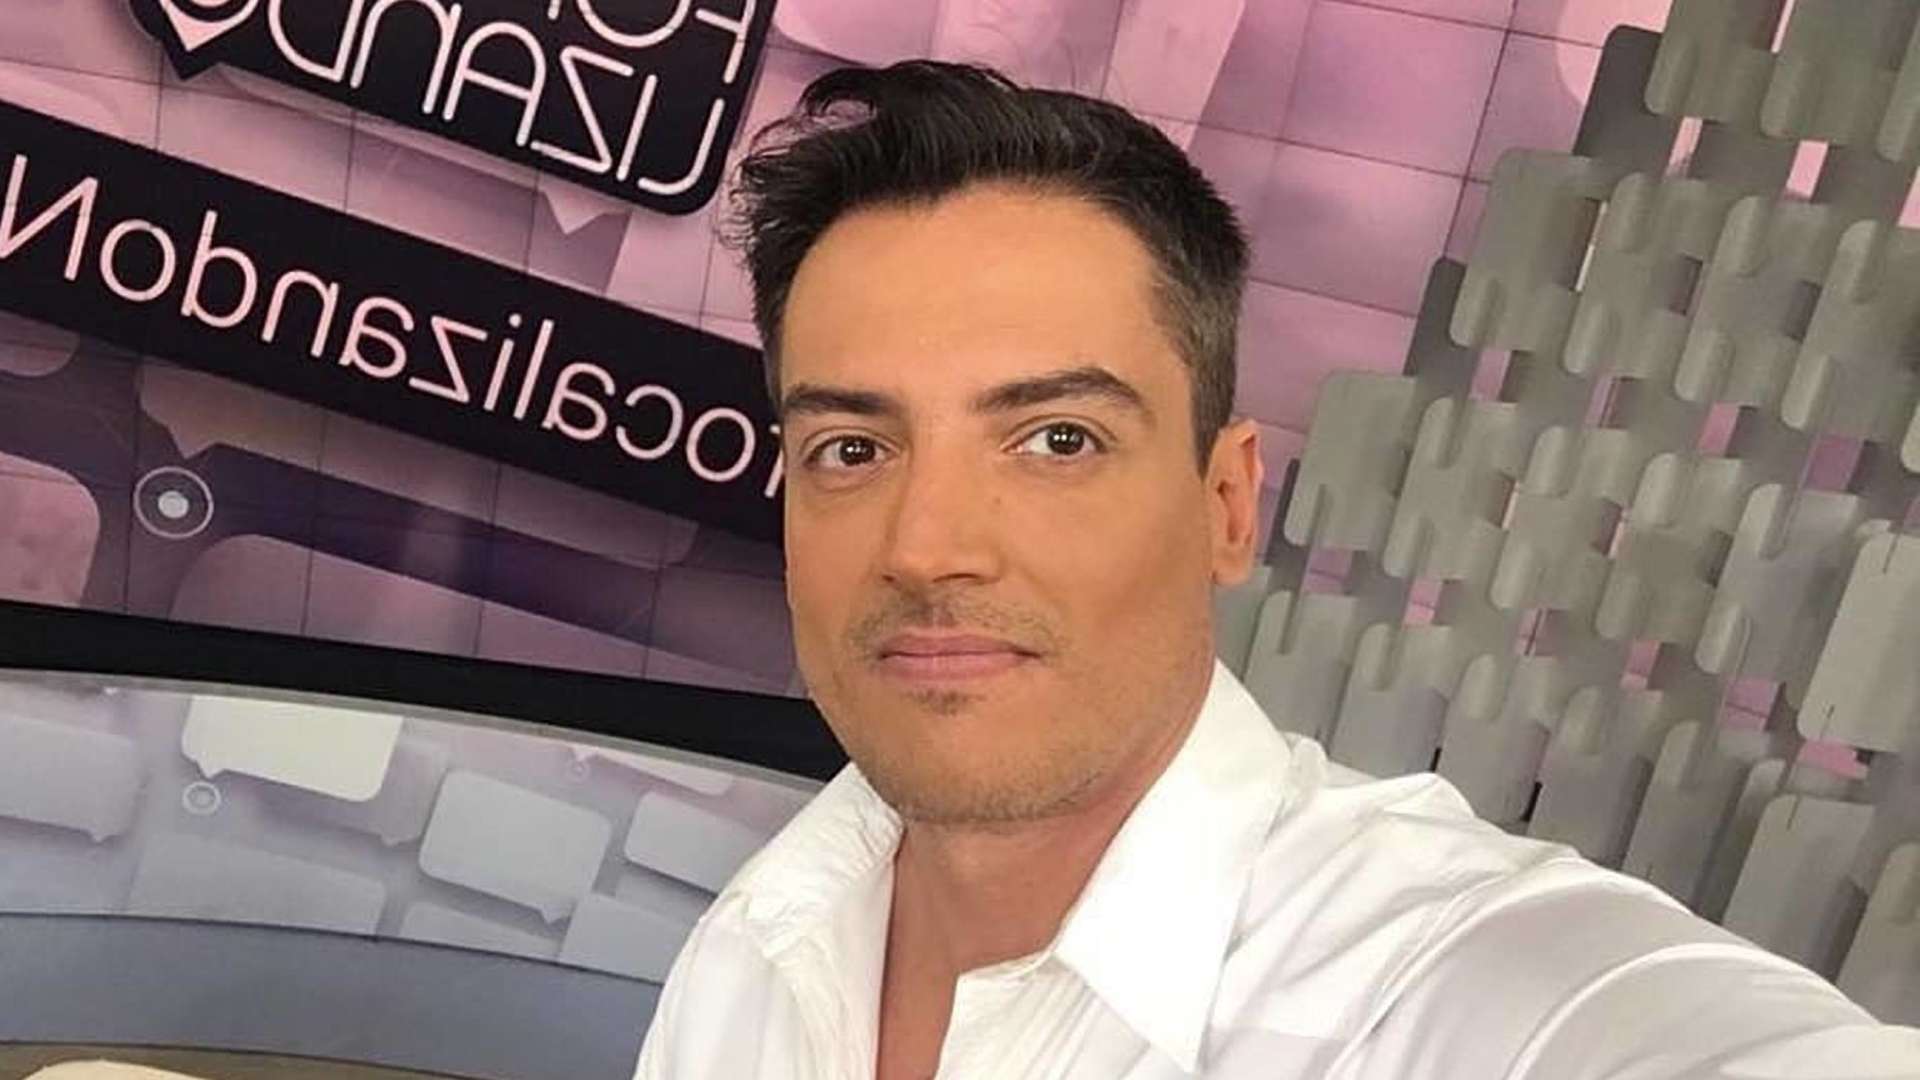 Jornalista Leo Dias